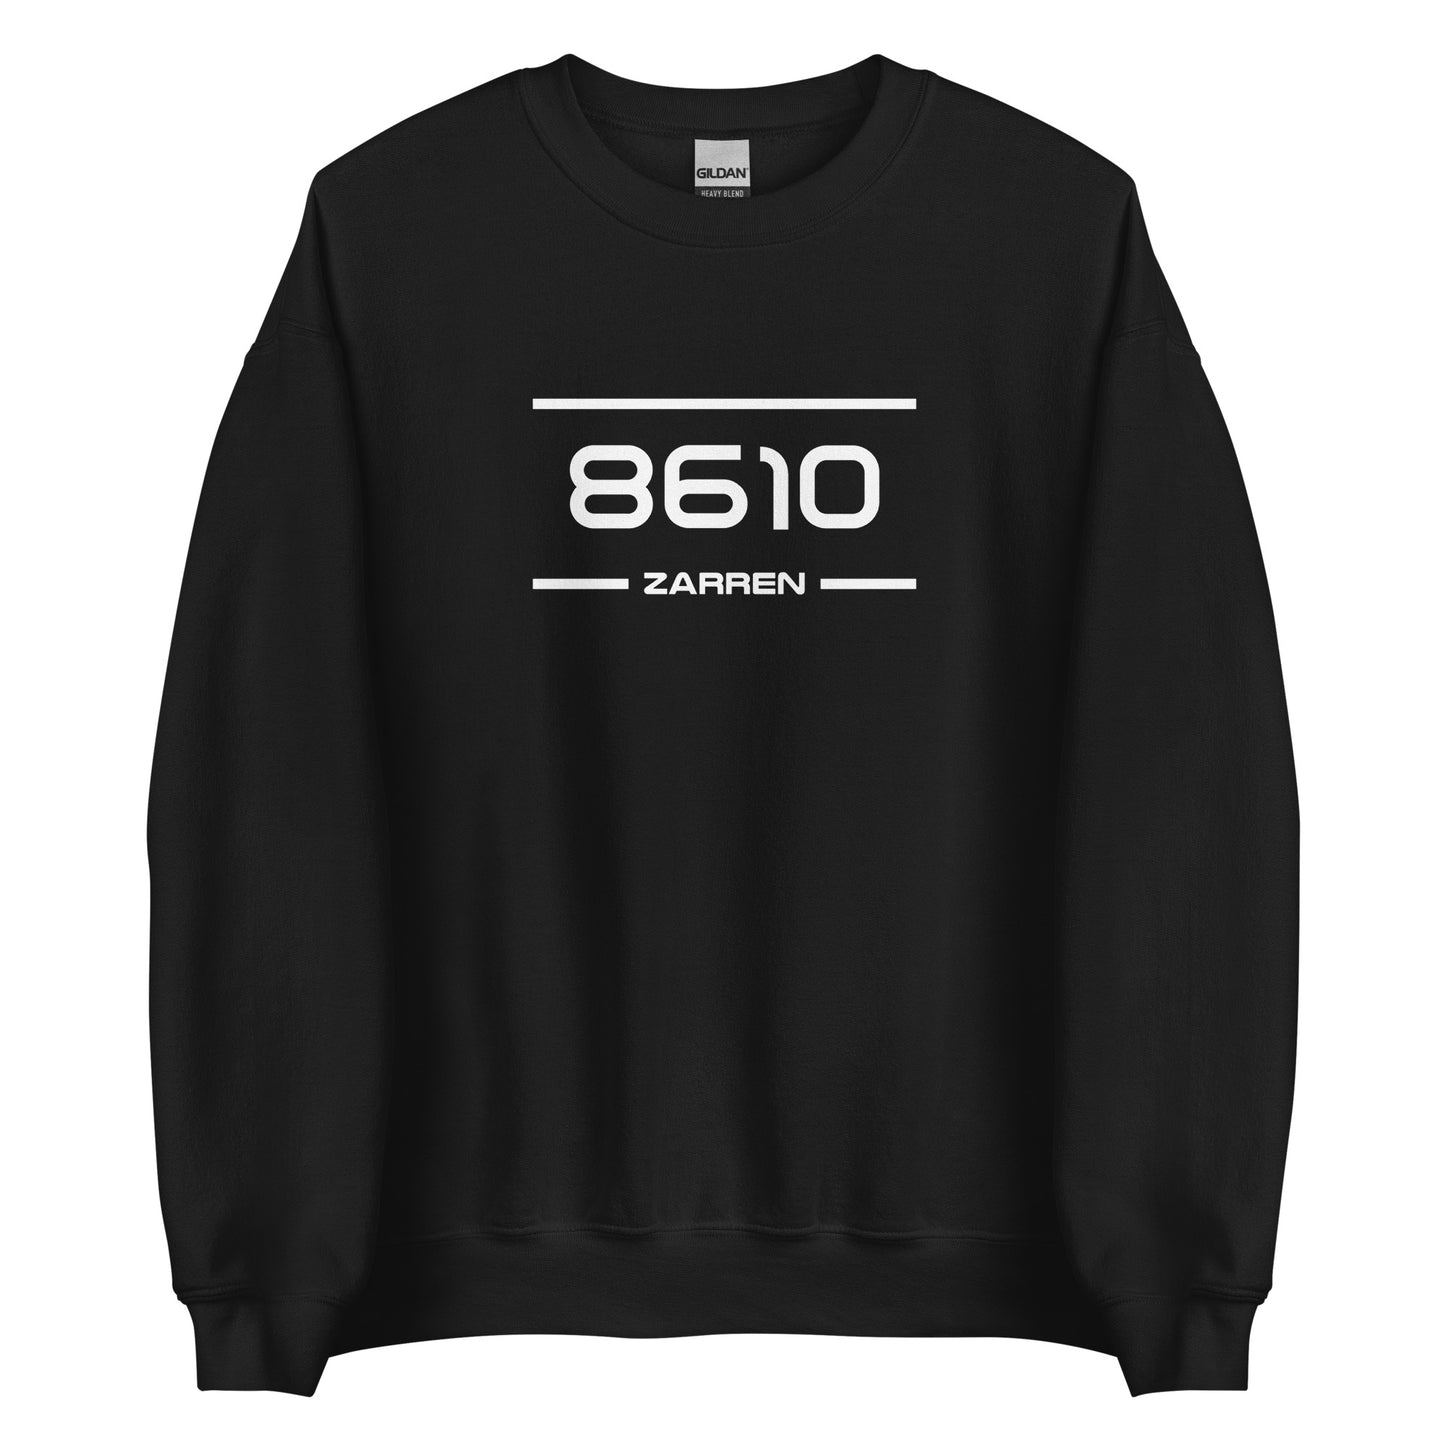 Sweater - 8610 - Zarren (M/V)